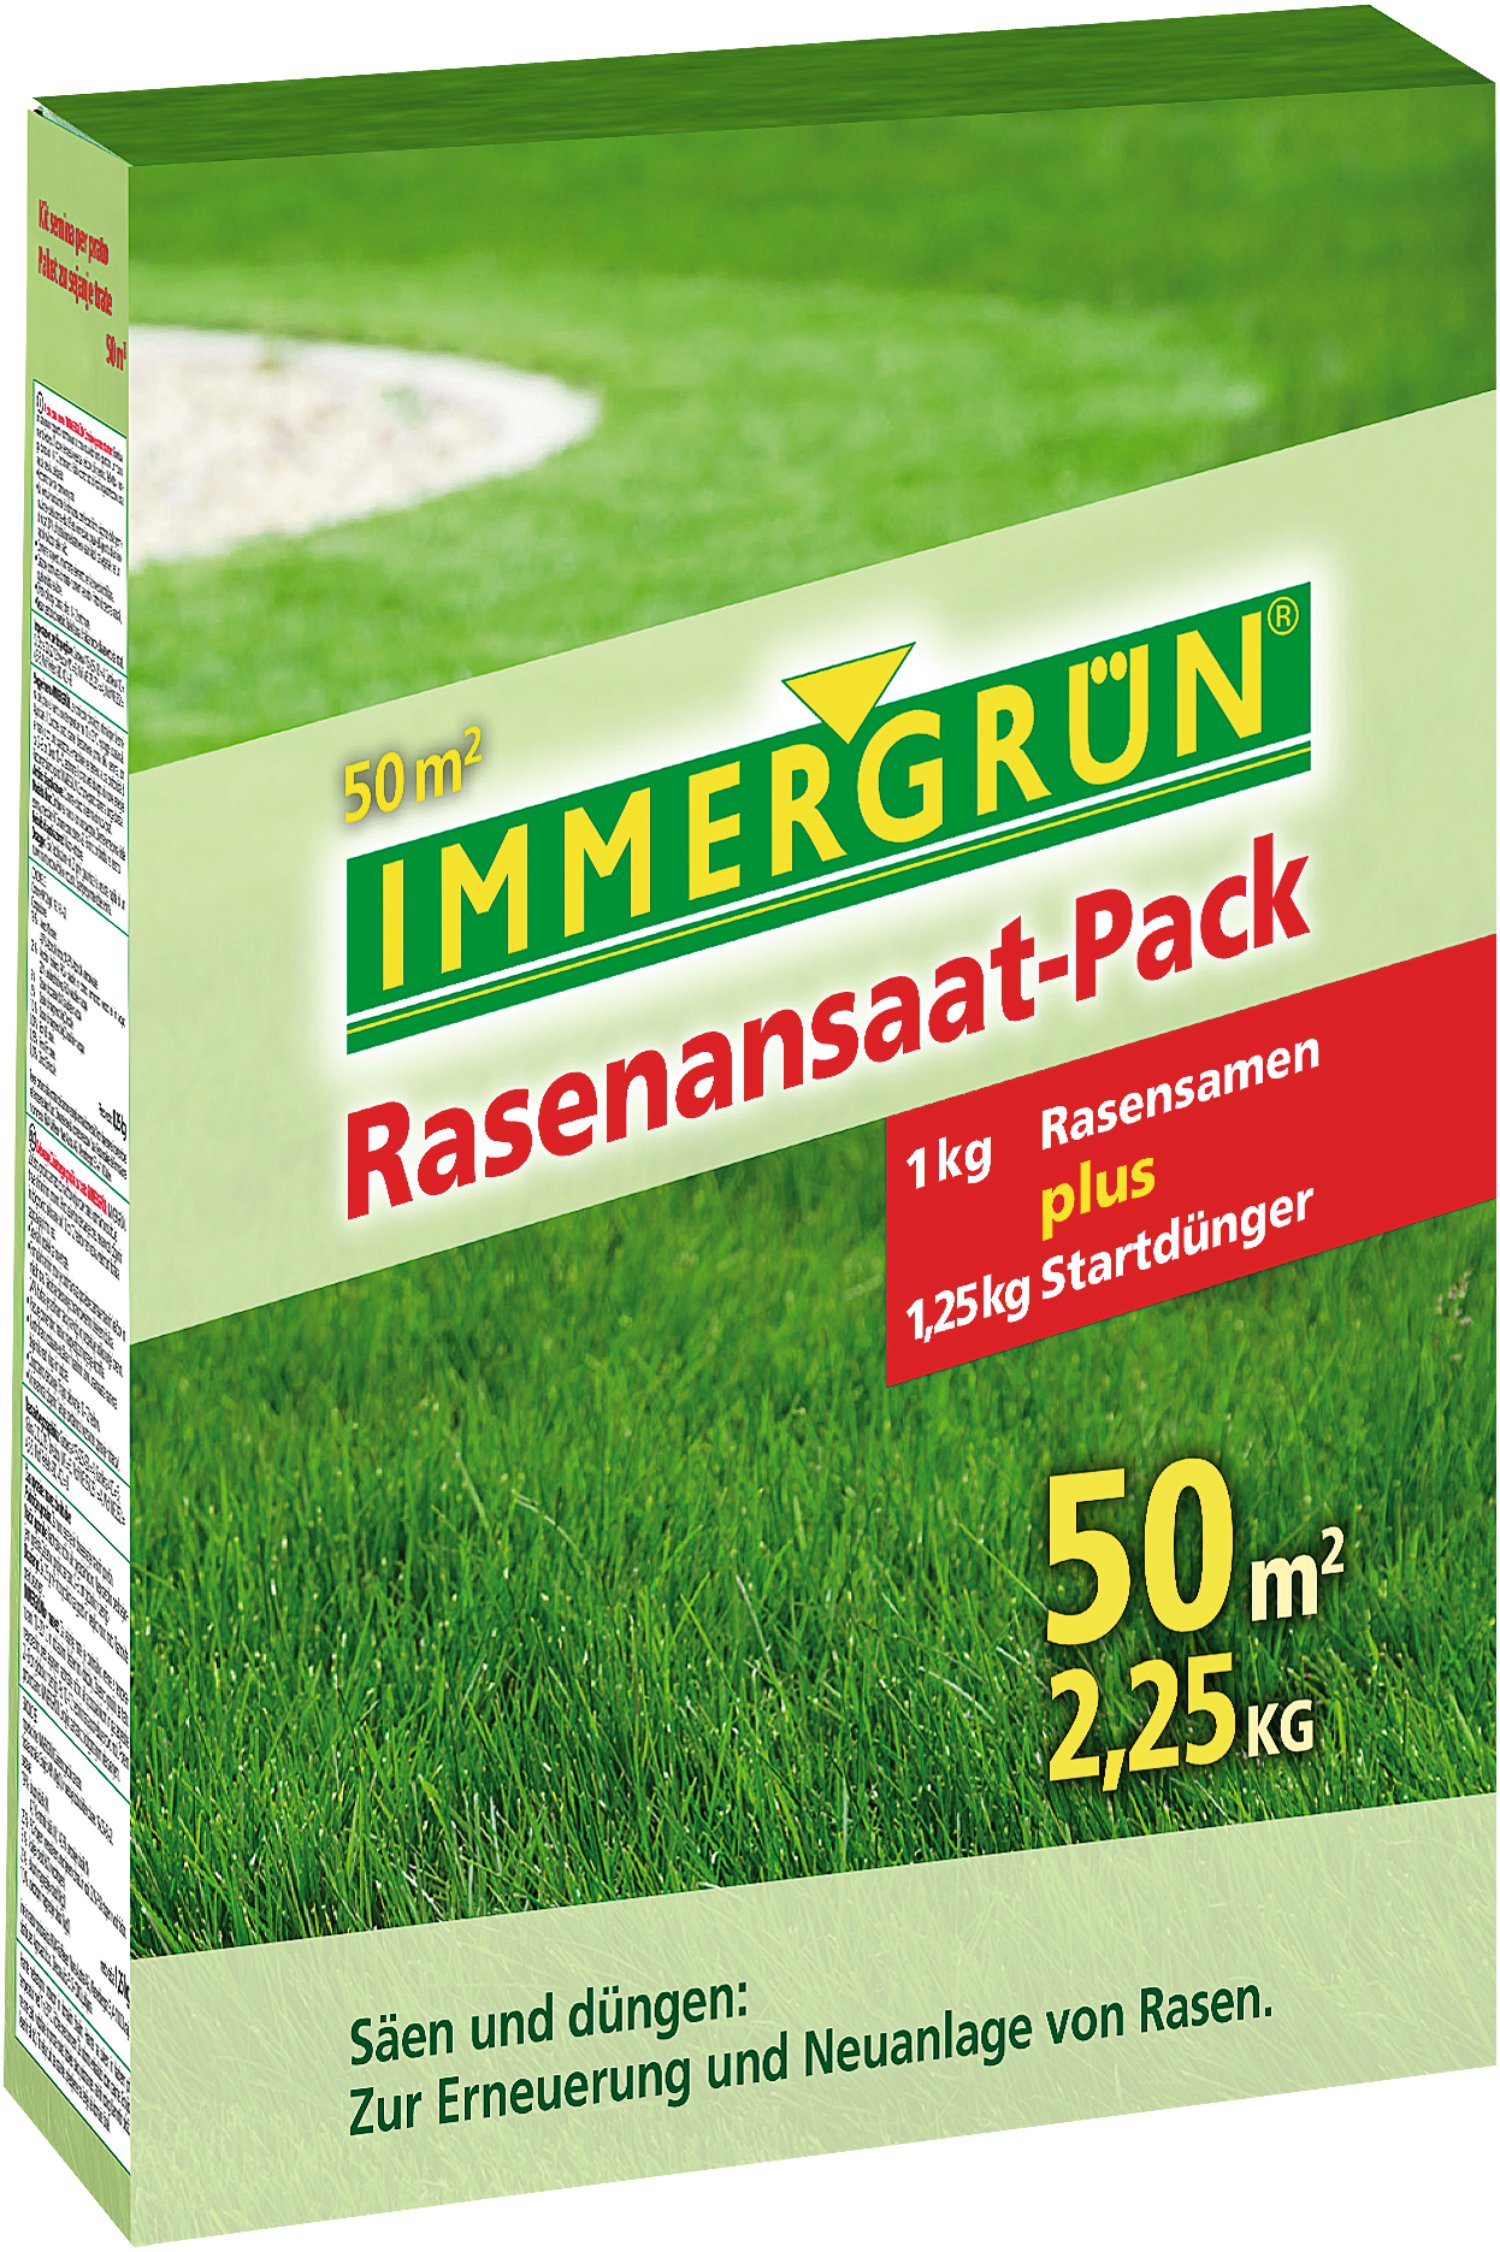 IMMERGRÜN Rasenansaat-Pack für 50 m²